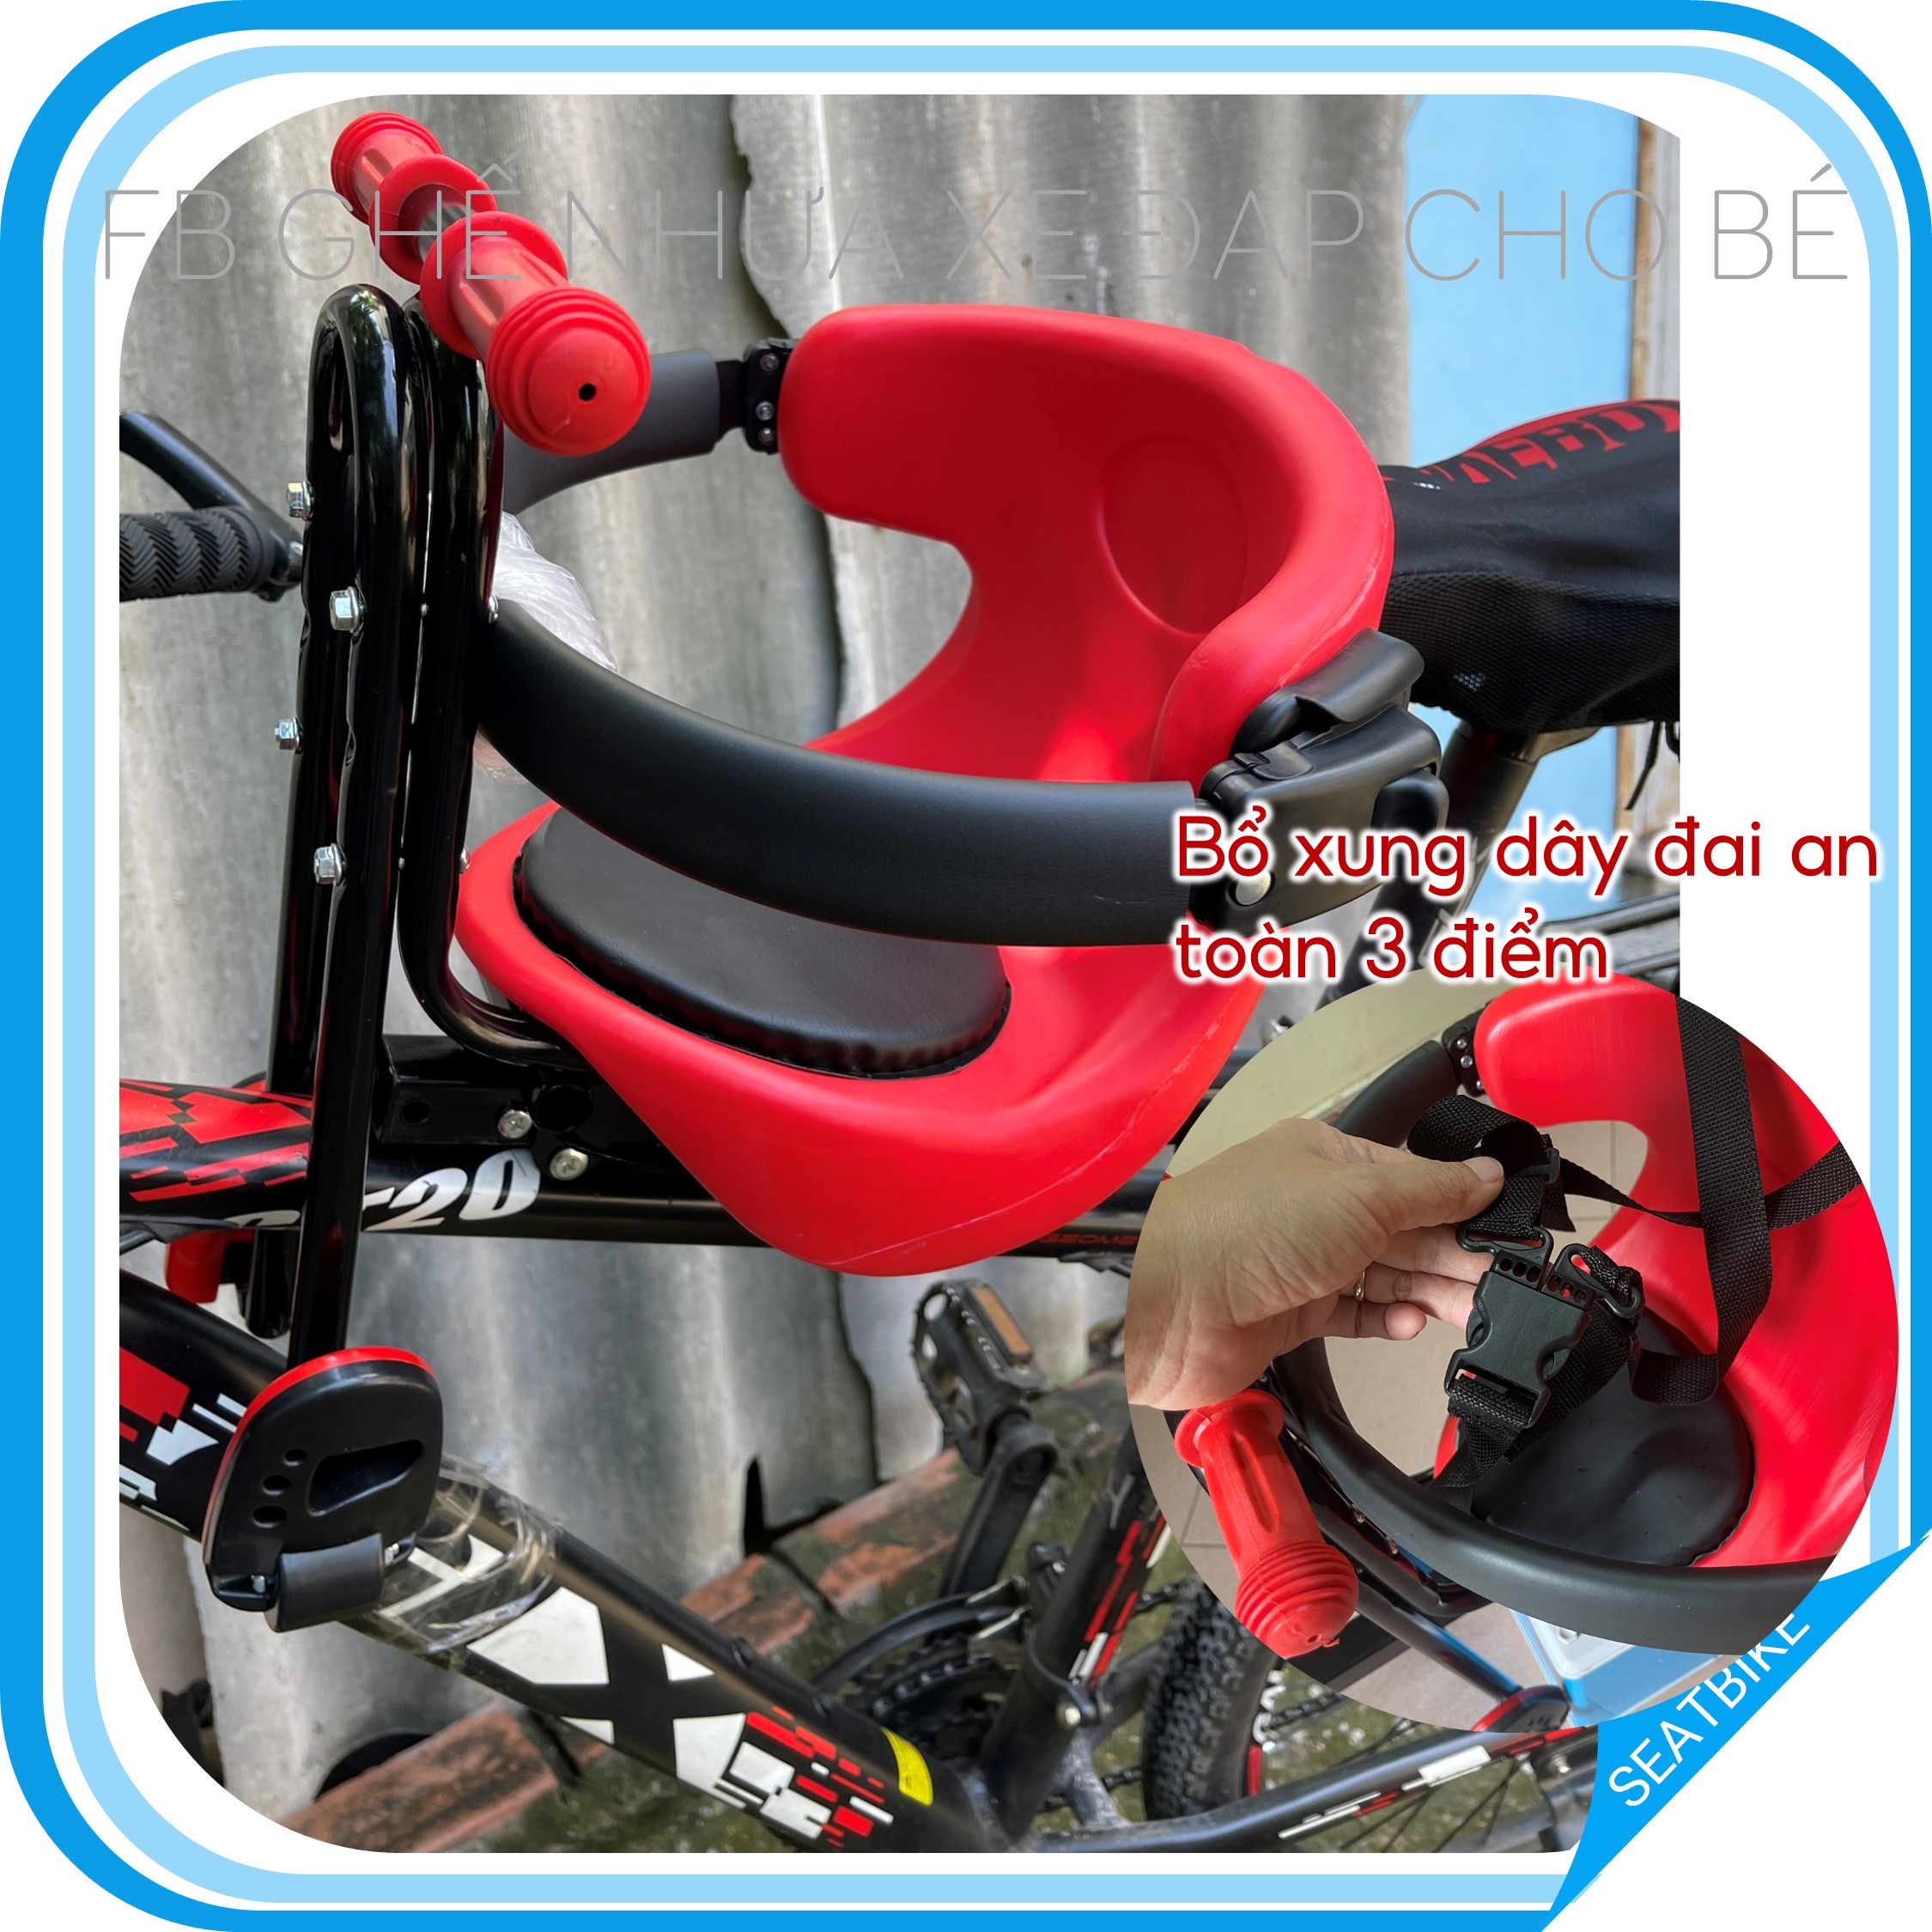 Ghế xe đạp lắp trước xe thể thao, xe đạp thường, xe điện, tháo lắp cơ động, Mở chốt rút ghế khi không sử dụng